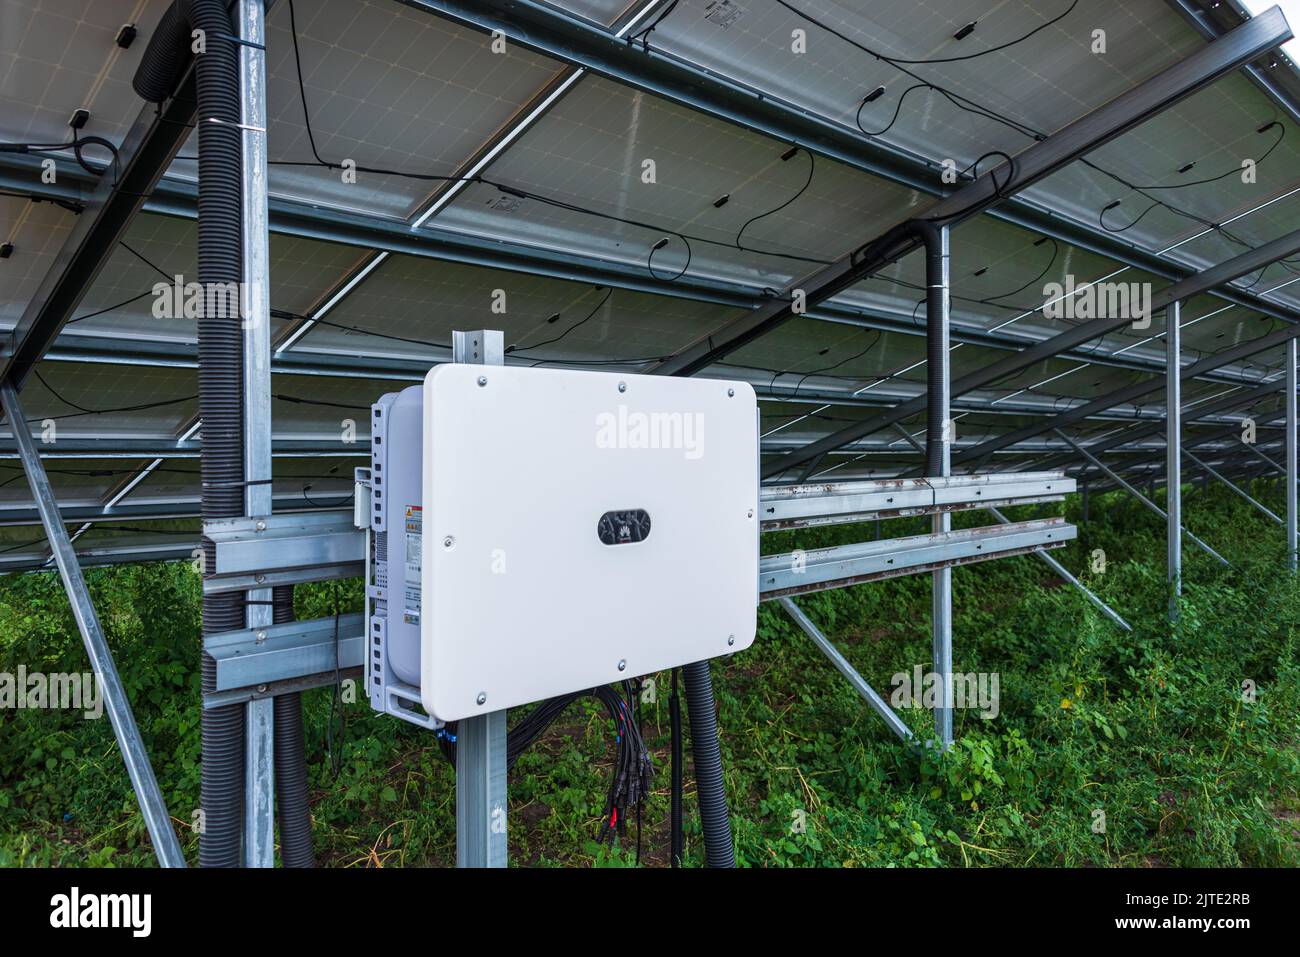 Rückseite einer Fotovoltaikanlage mit Verteiler und Elektrokabeln Stock Photo